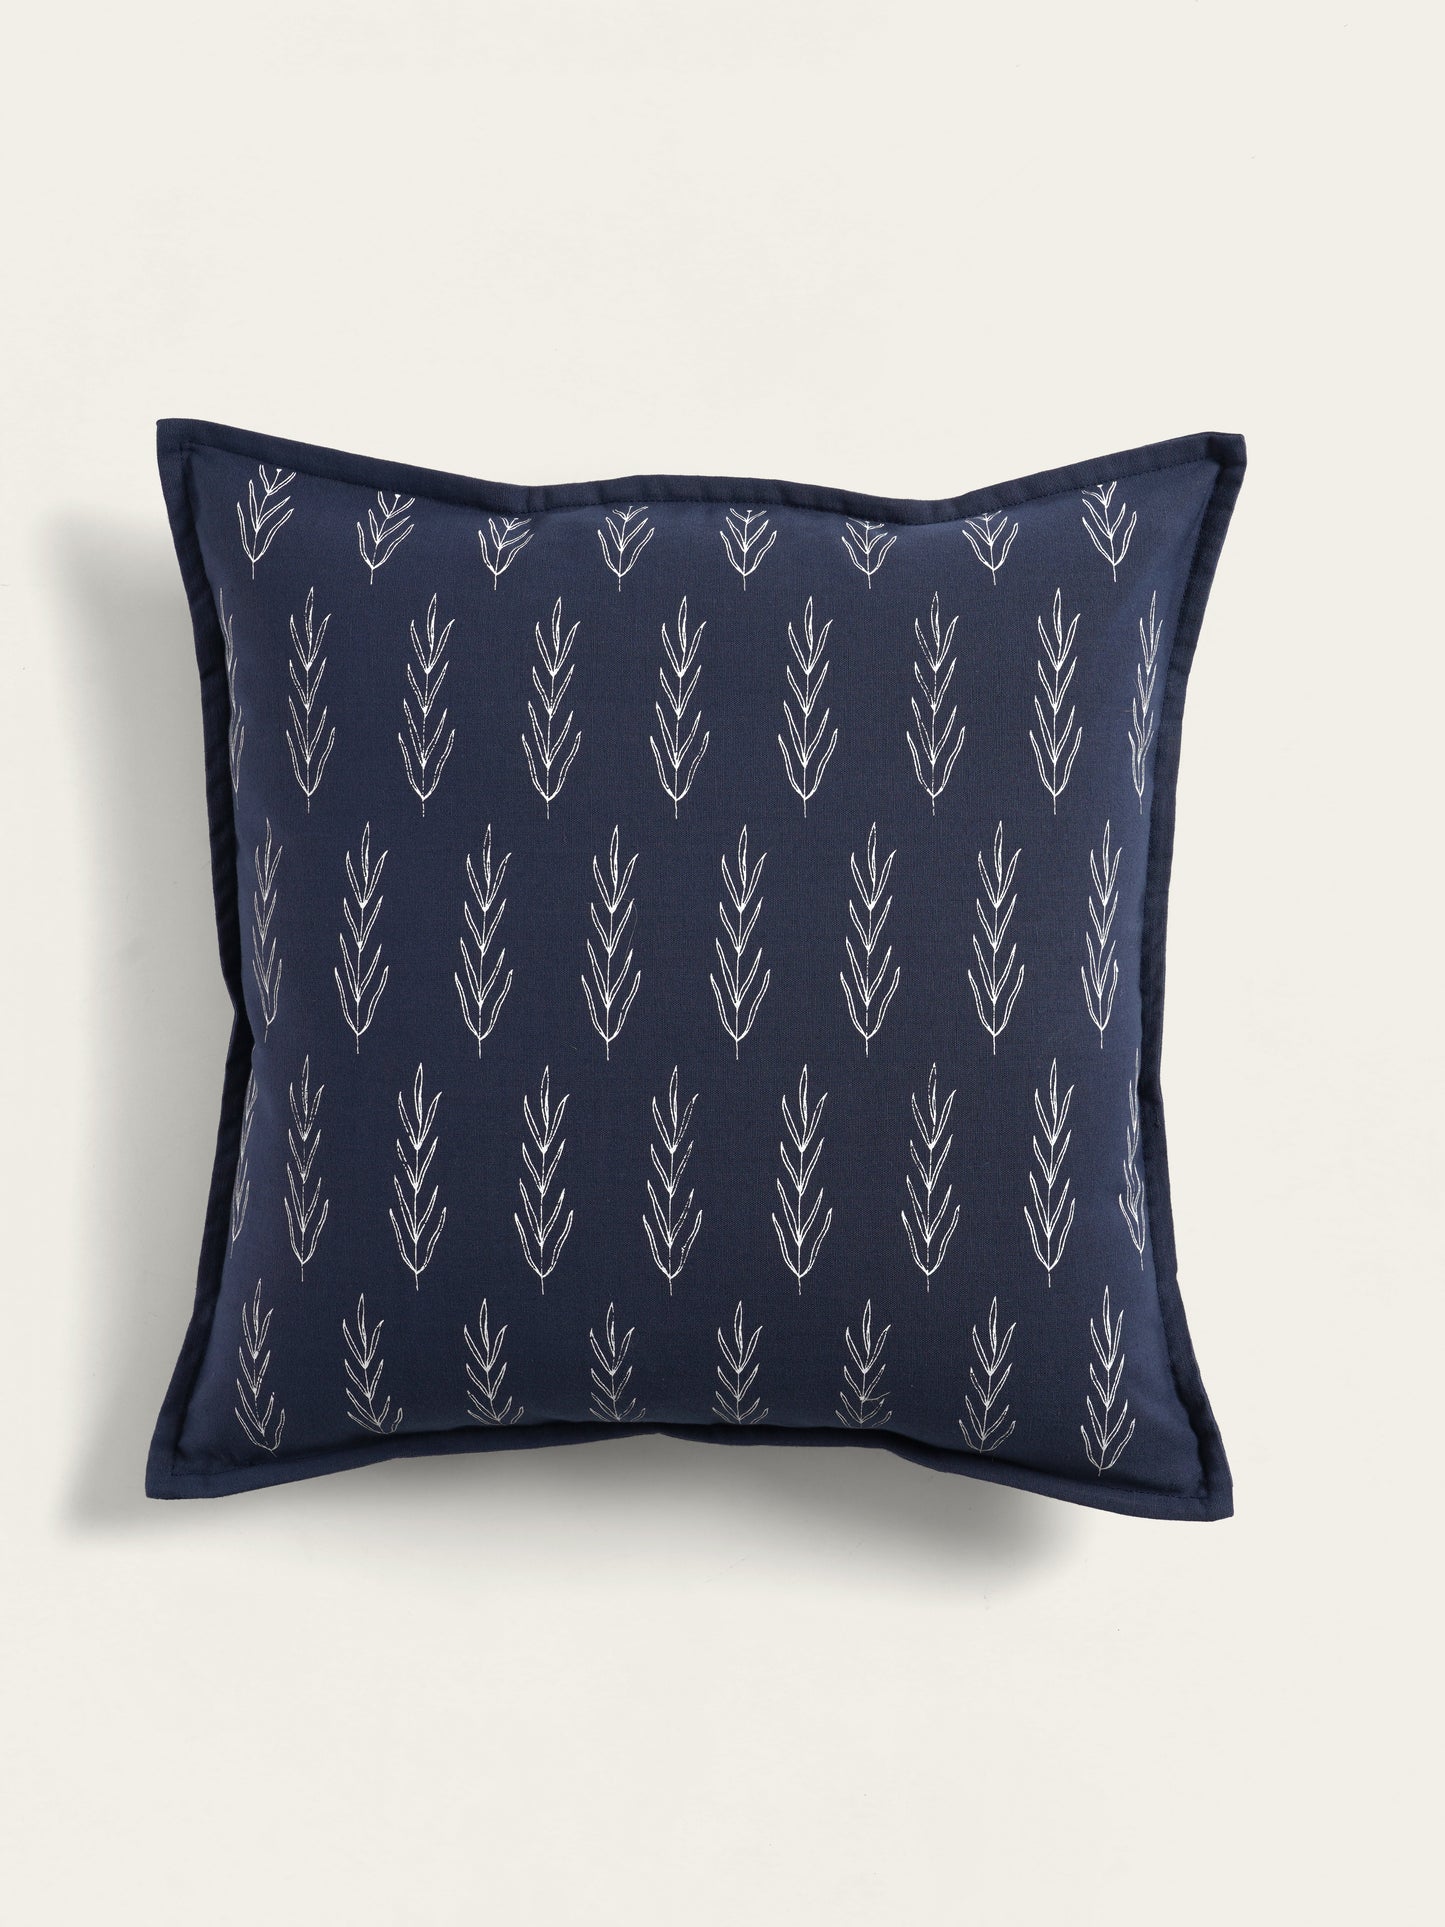 Durba Cushion Cover, Navy Blue (16” X 16”)